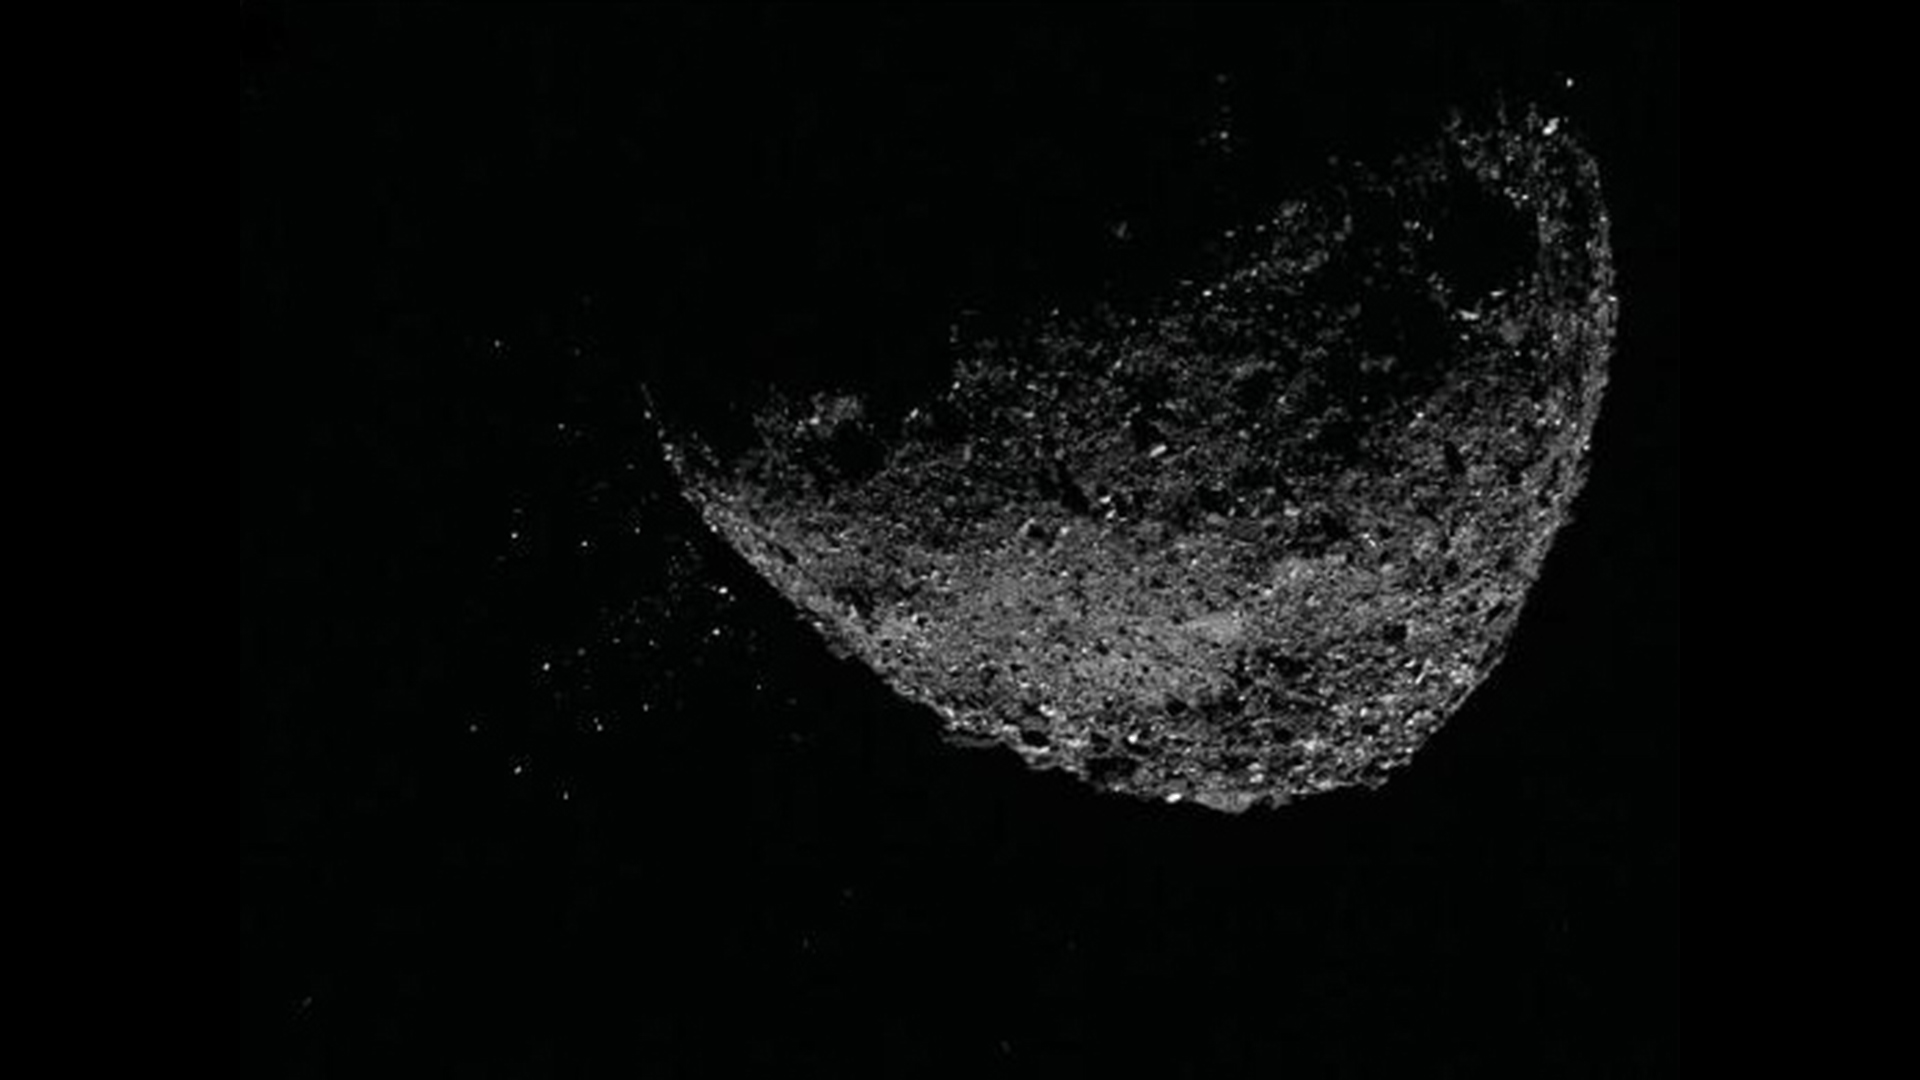 Αυτή η άποψη του αστεροειδούς Bennu που εκτοξεύει σωματίδια από την επιφάνειά του στις 6 Ιανουαρίου 2019, δημιουργήθηκε με το συνδυασμό δύο εικόνων που τραβήχτηκαν από τον απεικονιστή NavCam 1 στο διαστημόπλοιο OSIRIS-REx της NASA: μια εικόνα σύντομης έκθεσης, που δείχνει καθαρά τον αστεροειδή και μια εικόνα μακράς έκθεσης .  - Έκθεση της εικόνας (πέντε δευτερόλεπτα) που δείχνει καθαρά τα σωματίδια.